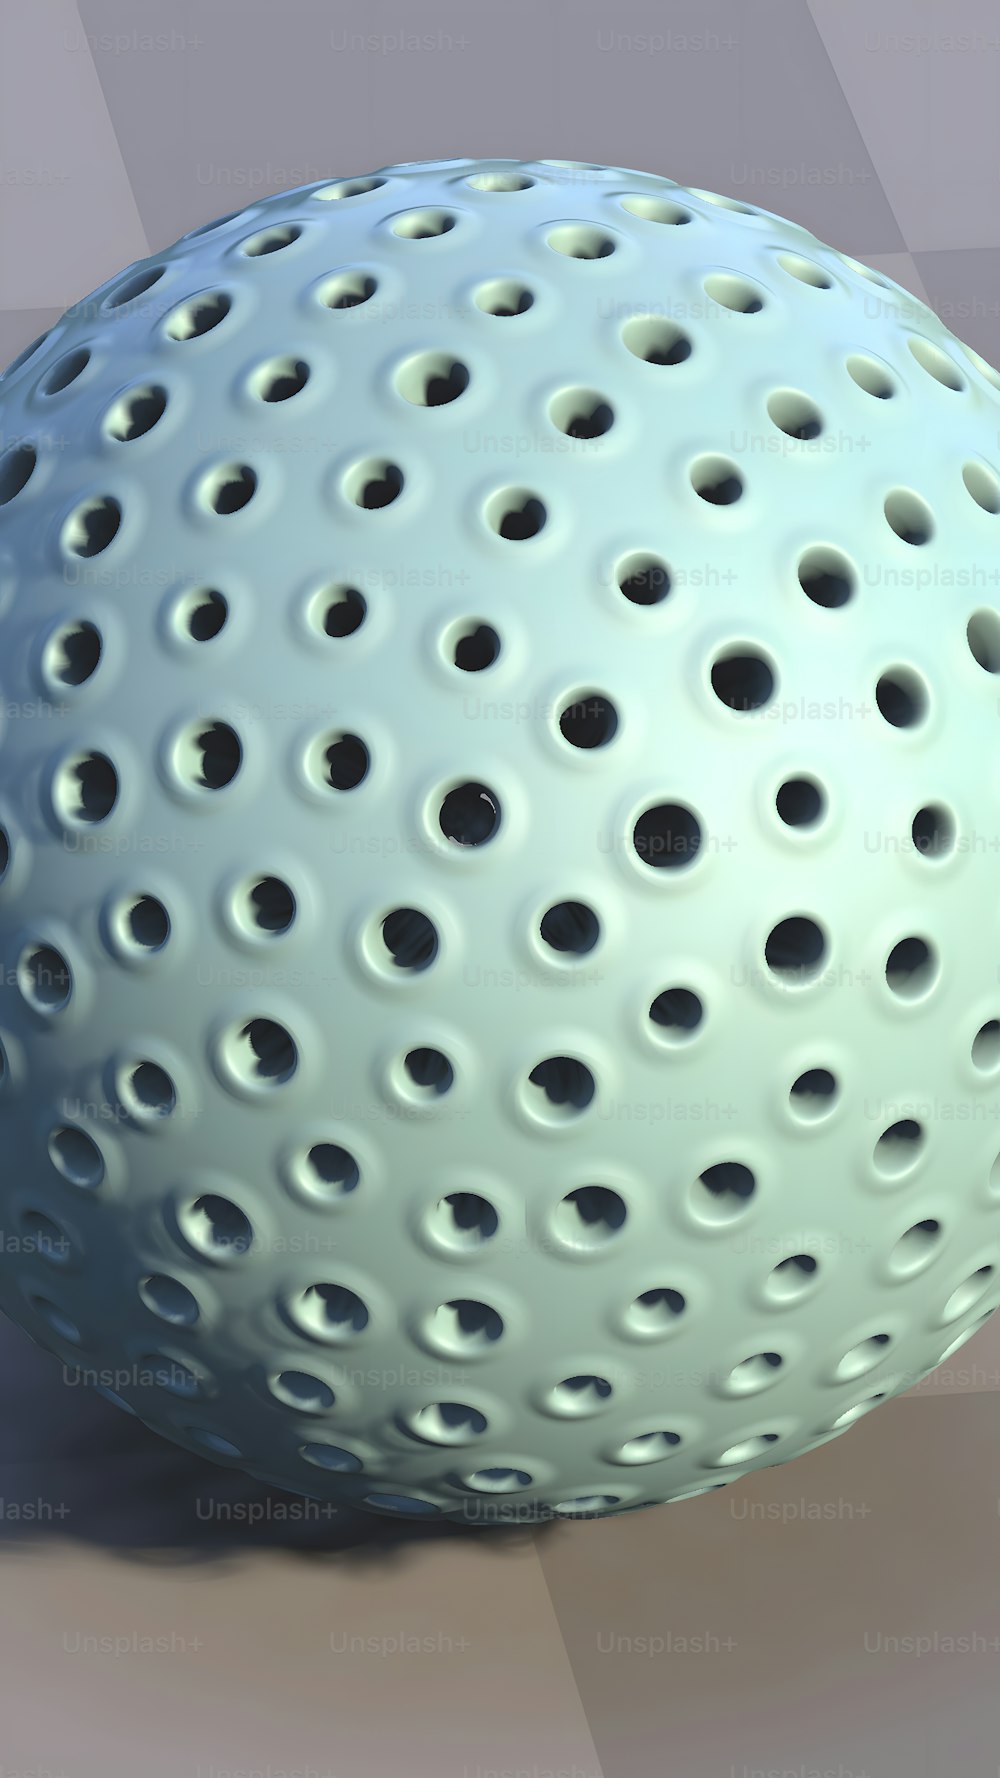 Un primer plano de una bola blanca con agujeros